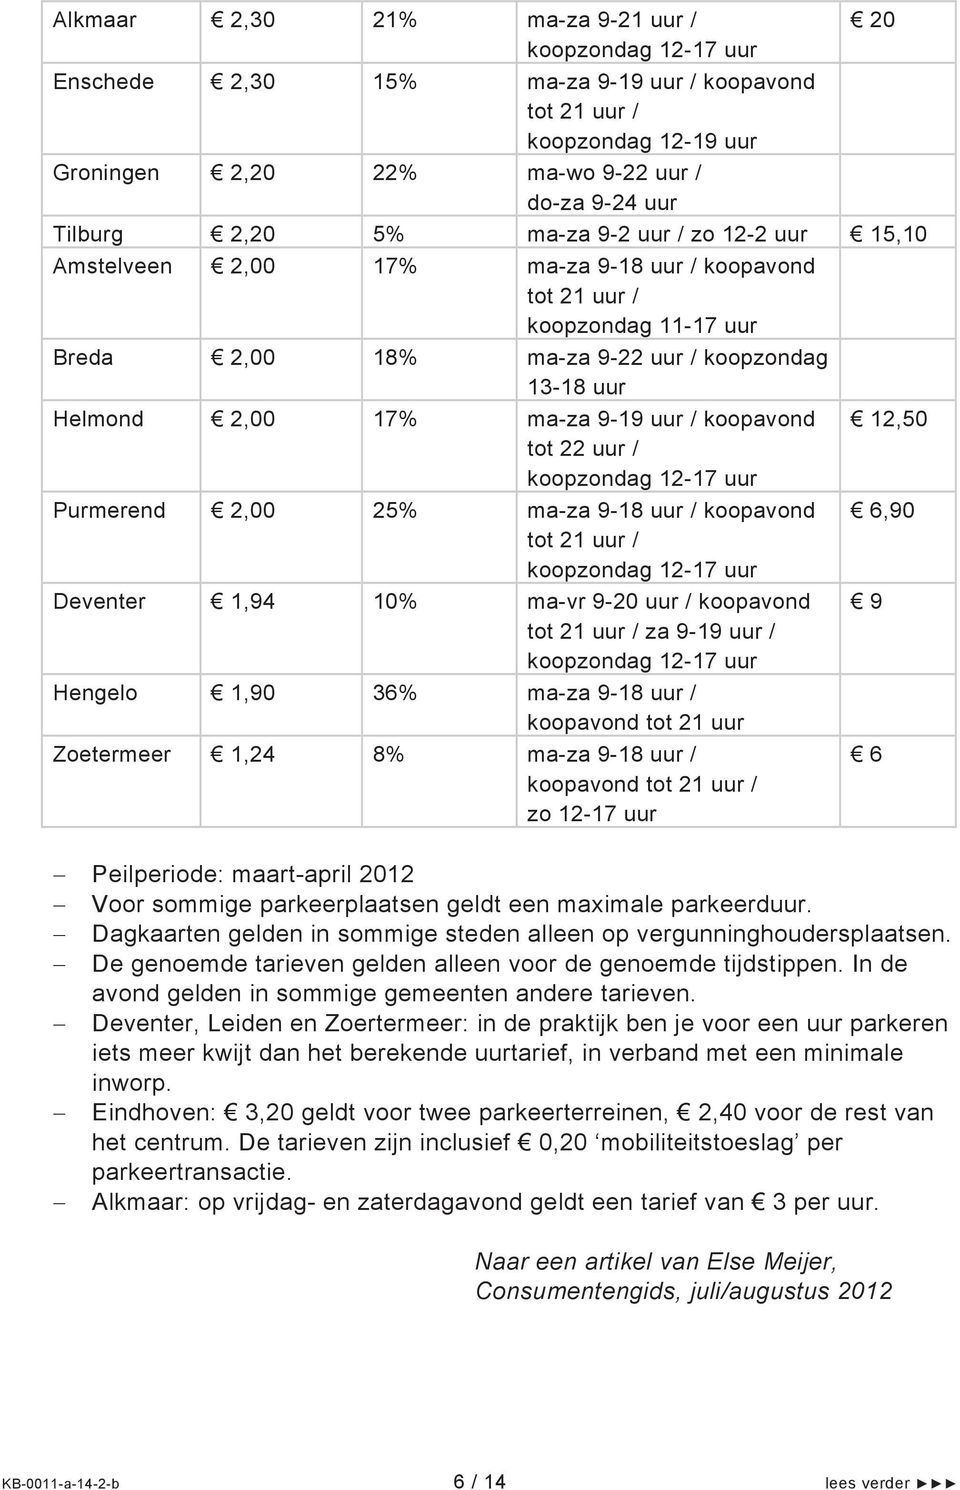 9-20 / koopavond za 9-19 / Hengelo 1,90 36% ma-za 9-18 / koopavond tot 21 Zoetermeer 1,24 8% ma-za 9-18 / koopavond zo 12-17 12,50 6,90 Peilperiode: maart-april 2012 Voor sommige parkeerplaatsen